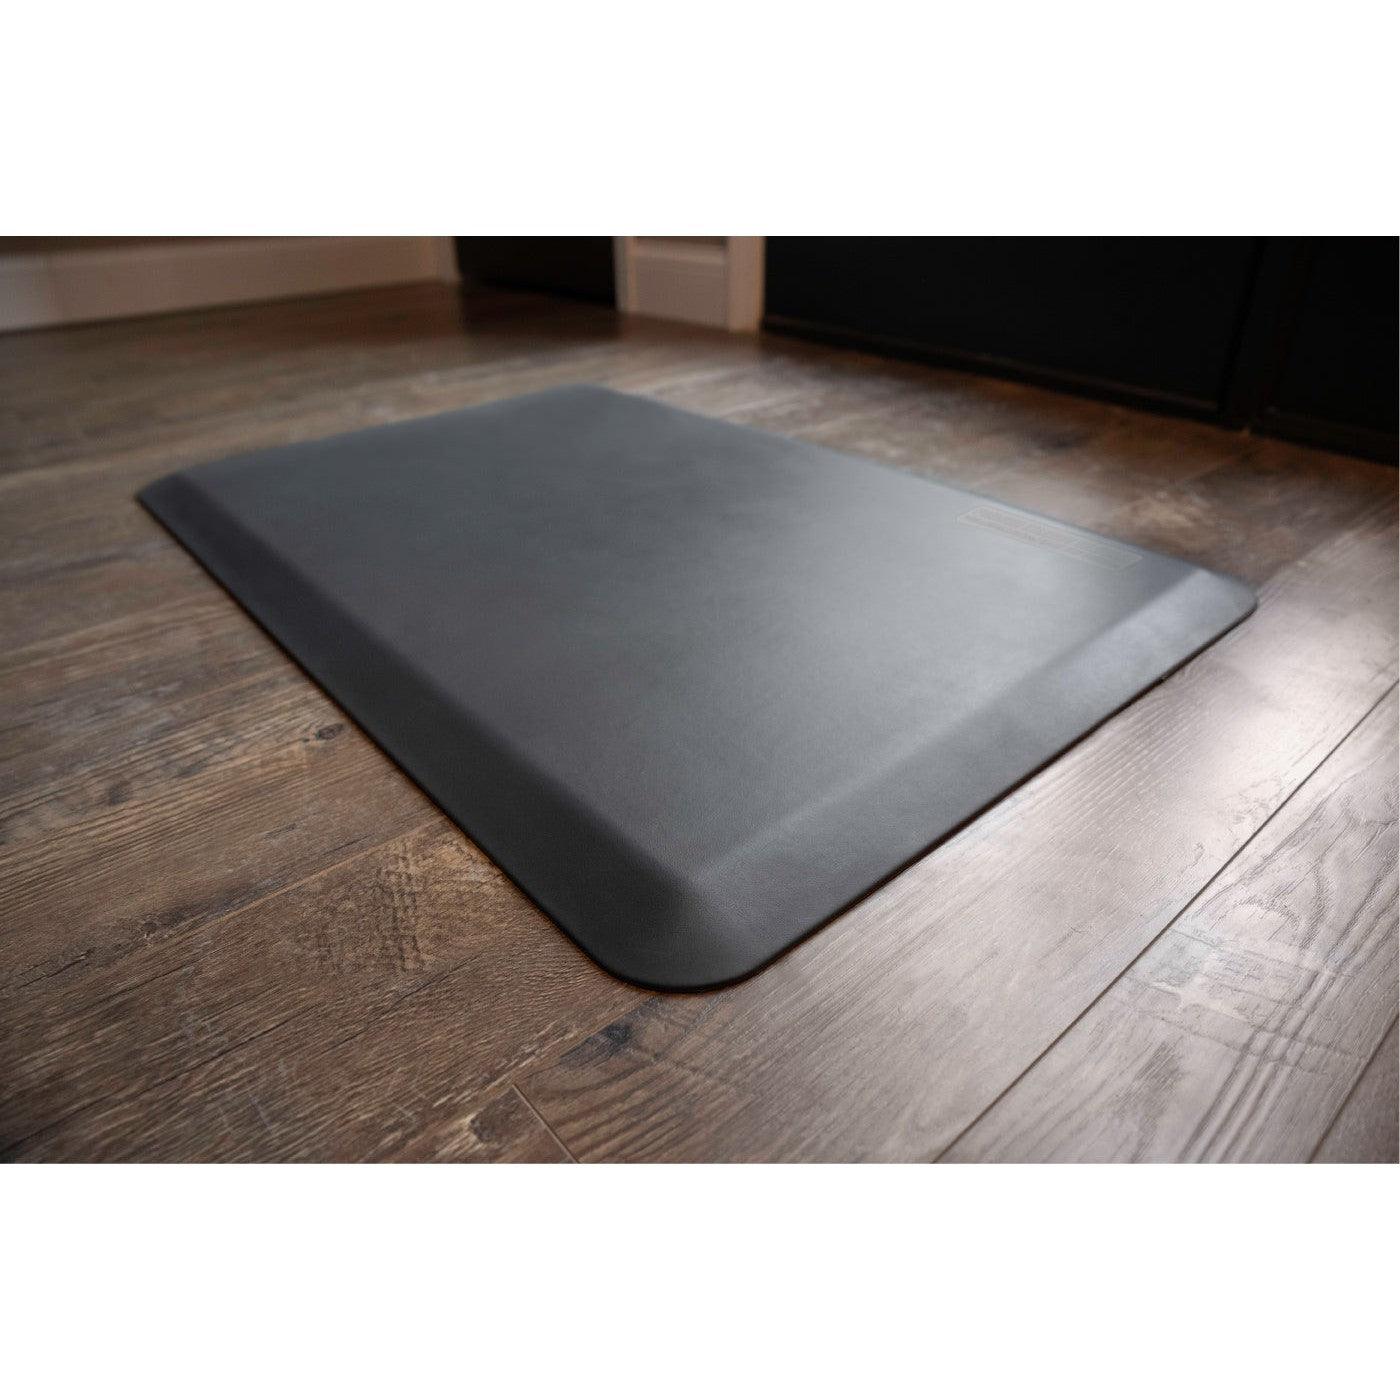 EcoLast Premium Standing Mat, Gray, shown on hardwood floor